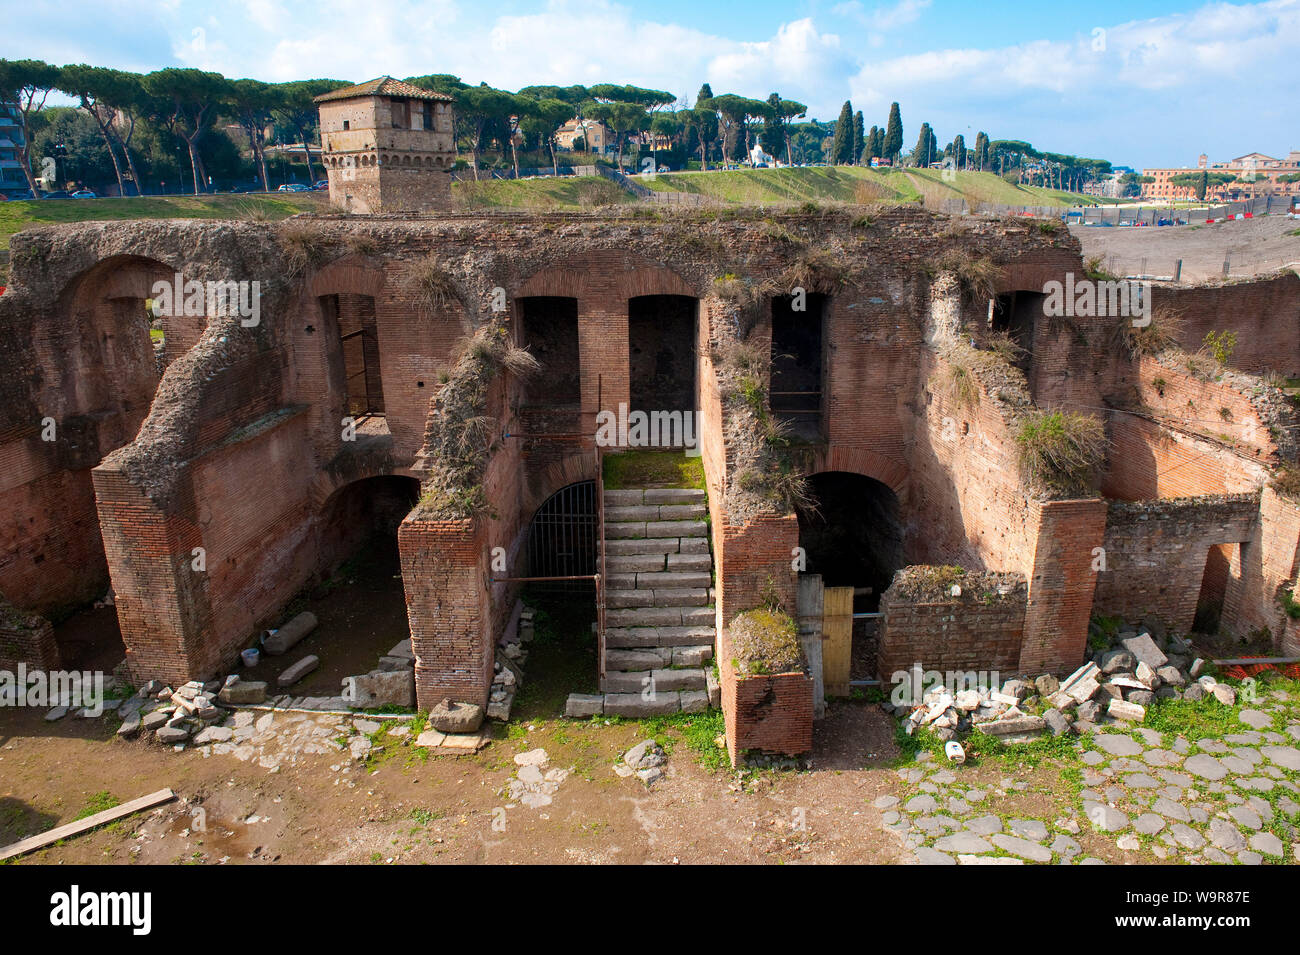 Fouilles archéologiques de l'ancienne terrasse, ruine, stand de Circus Maximus, Rome, Italie, Europe Banque D'Images